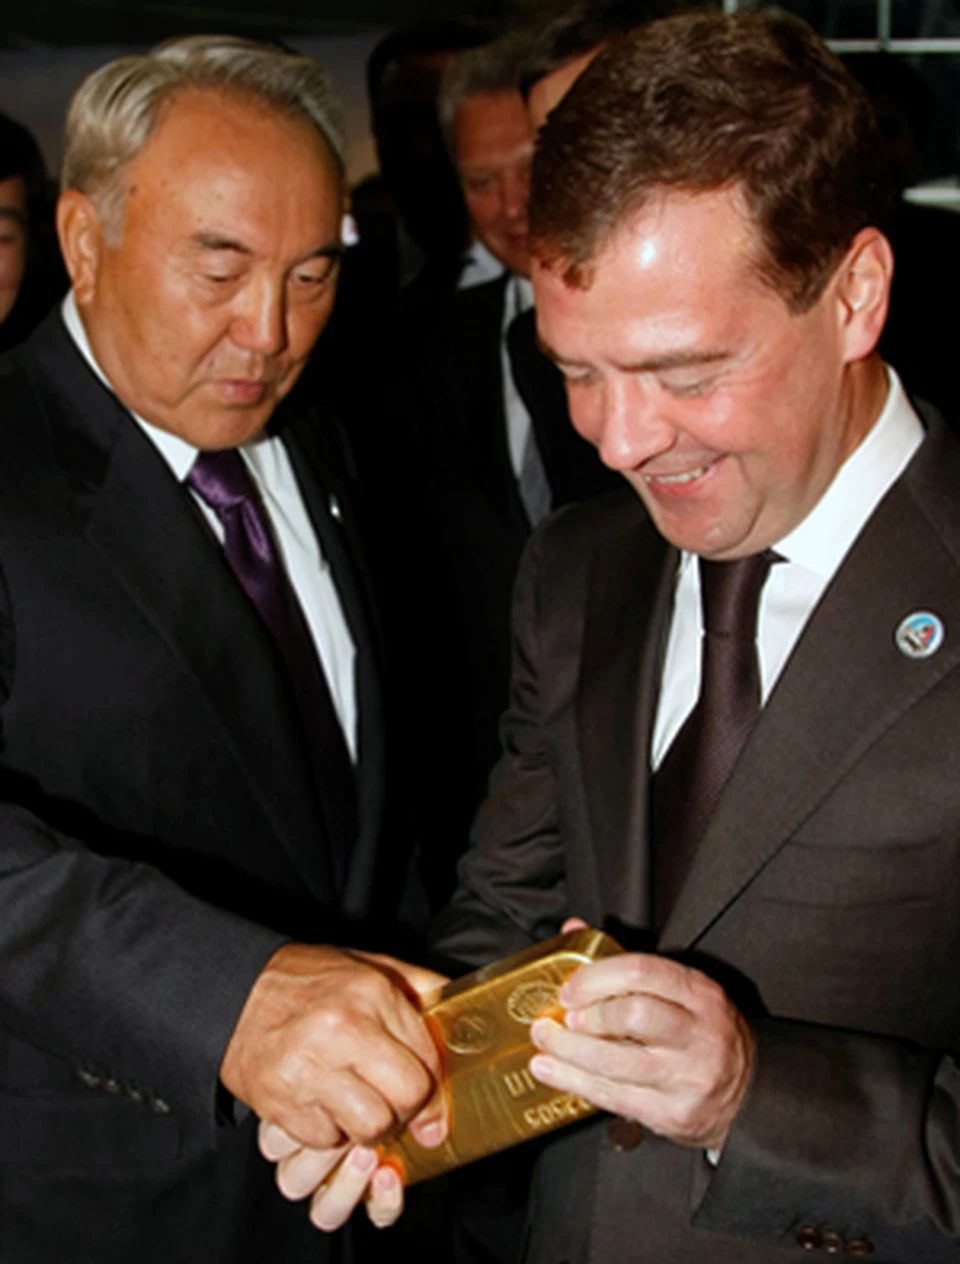 Медведев и Назарбаев подержали полмиллиона «золотых долларов» на двоих.